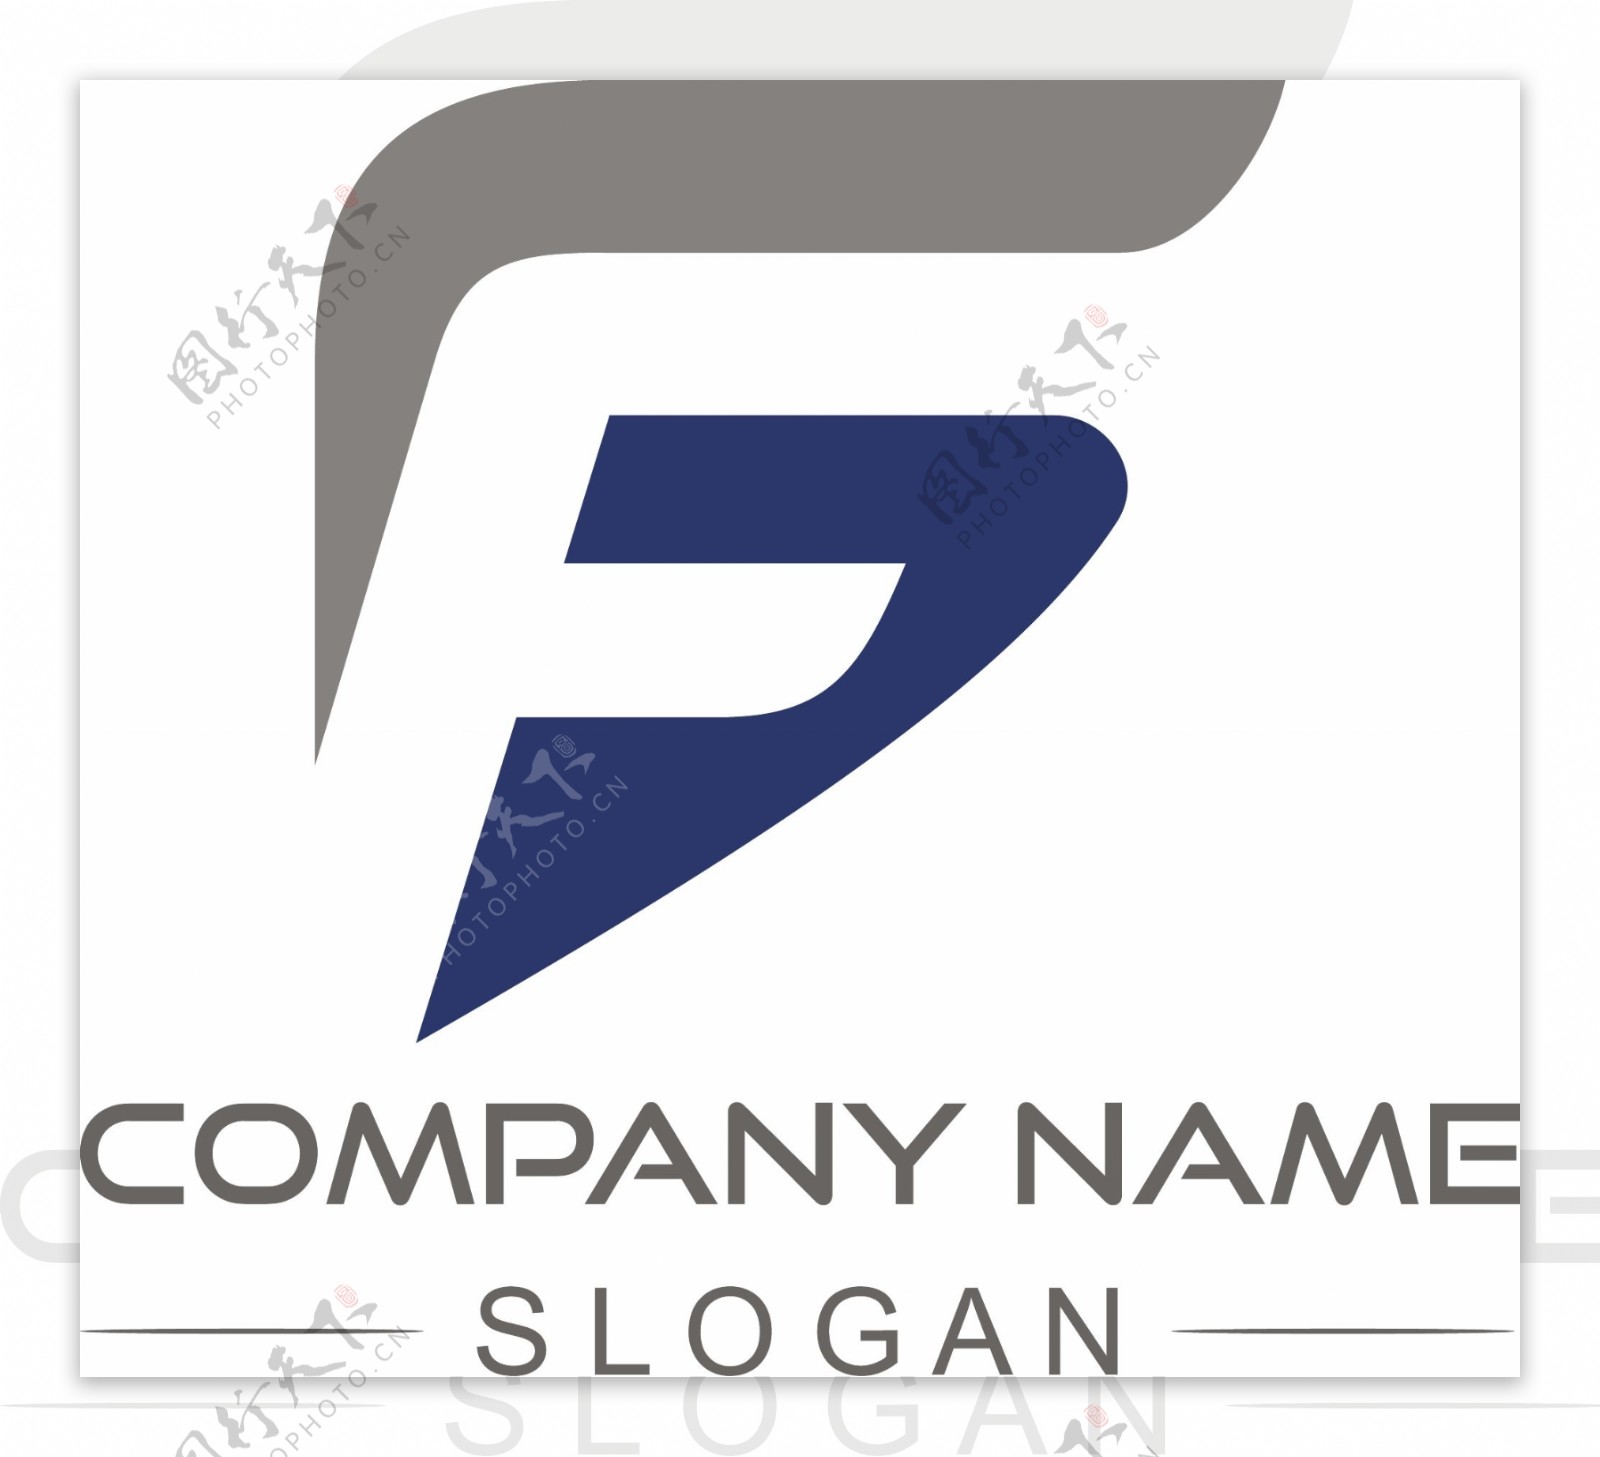 互联网工业简约造型logo标识